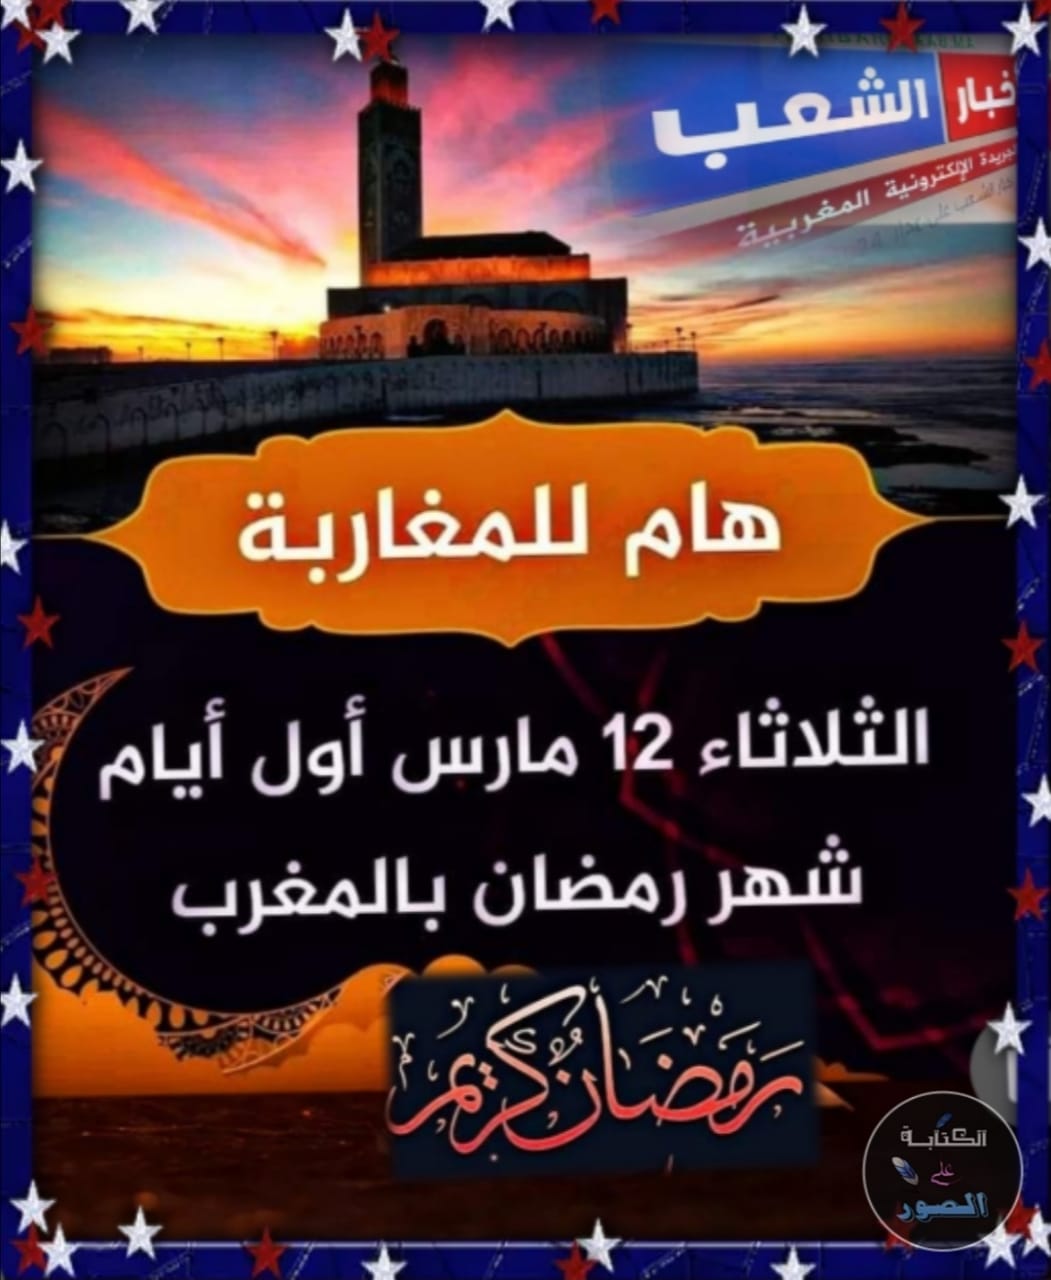 أعلنت وزارة الأوقاف والشؤون الإسلامية أن فاتح شهر رمضان 1445هـ هو يوم الثلاثاء الموافق لـ12 مارس 2024.